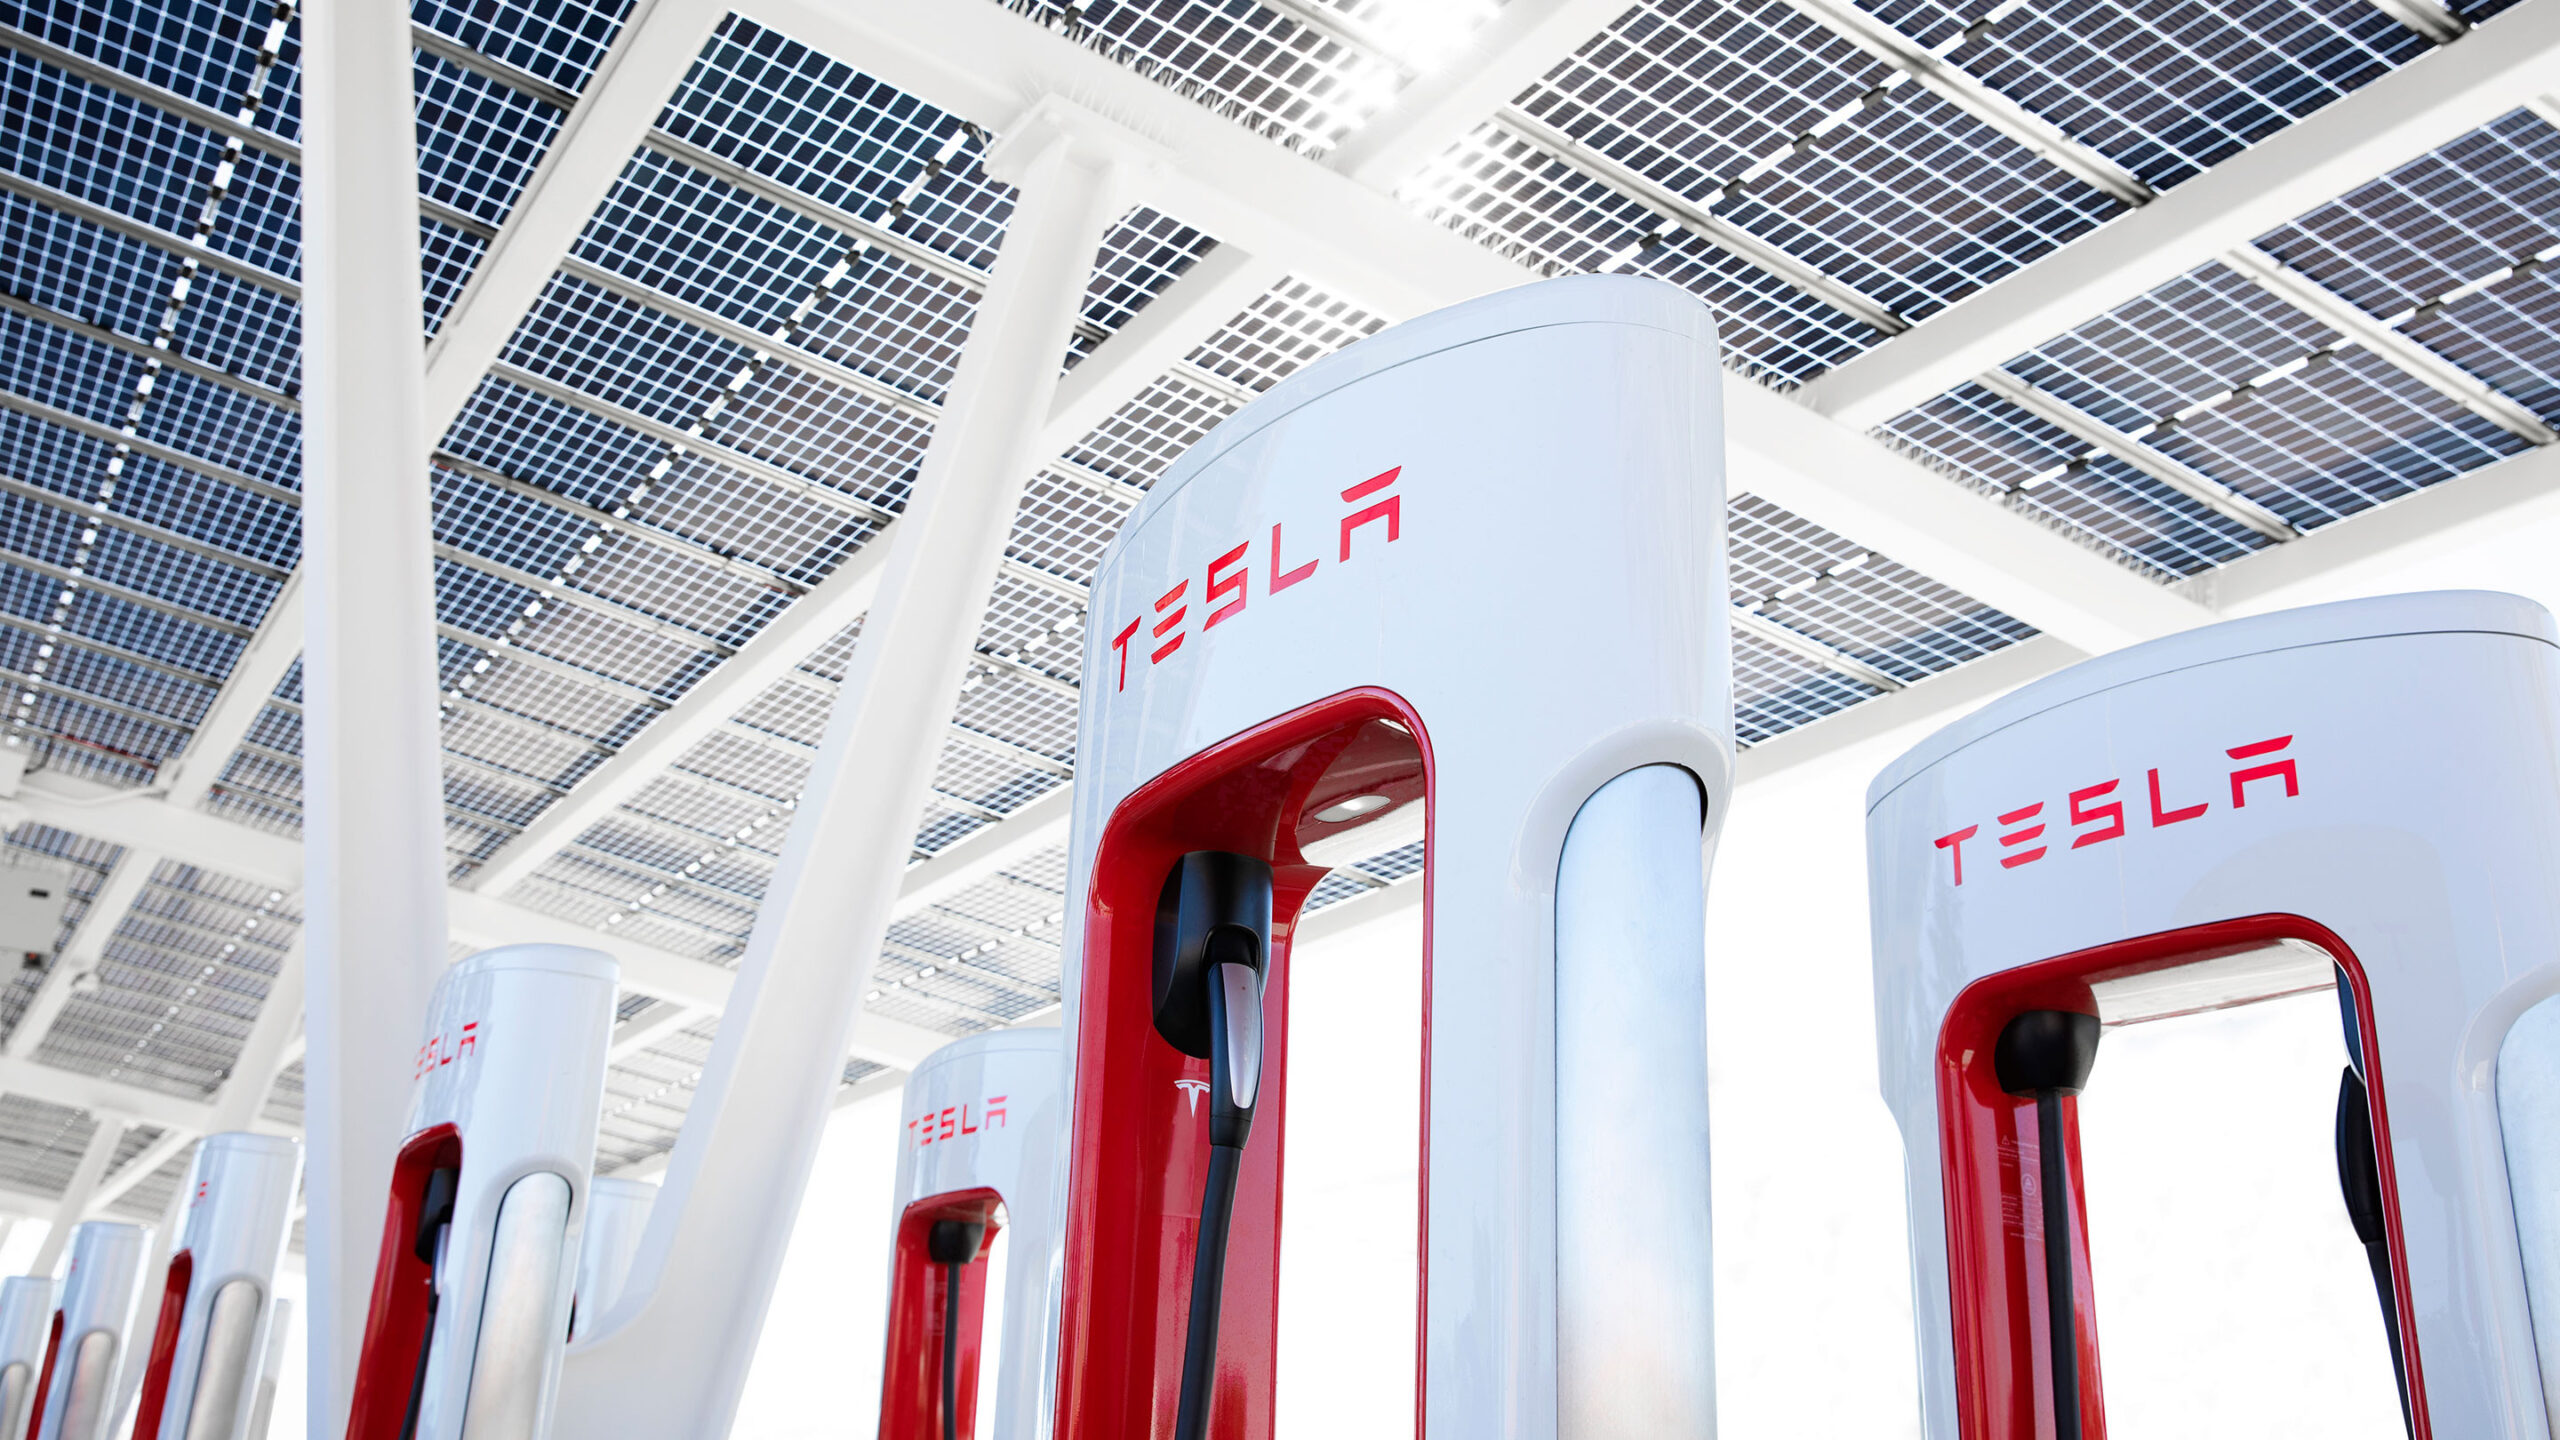 Tesla supercharger network